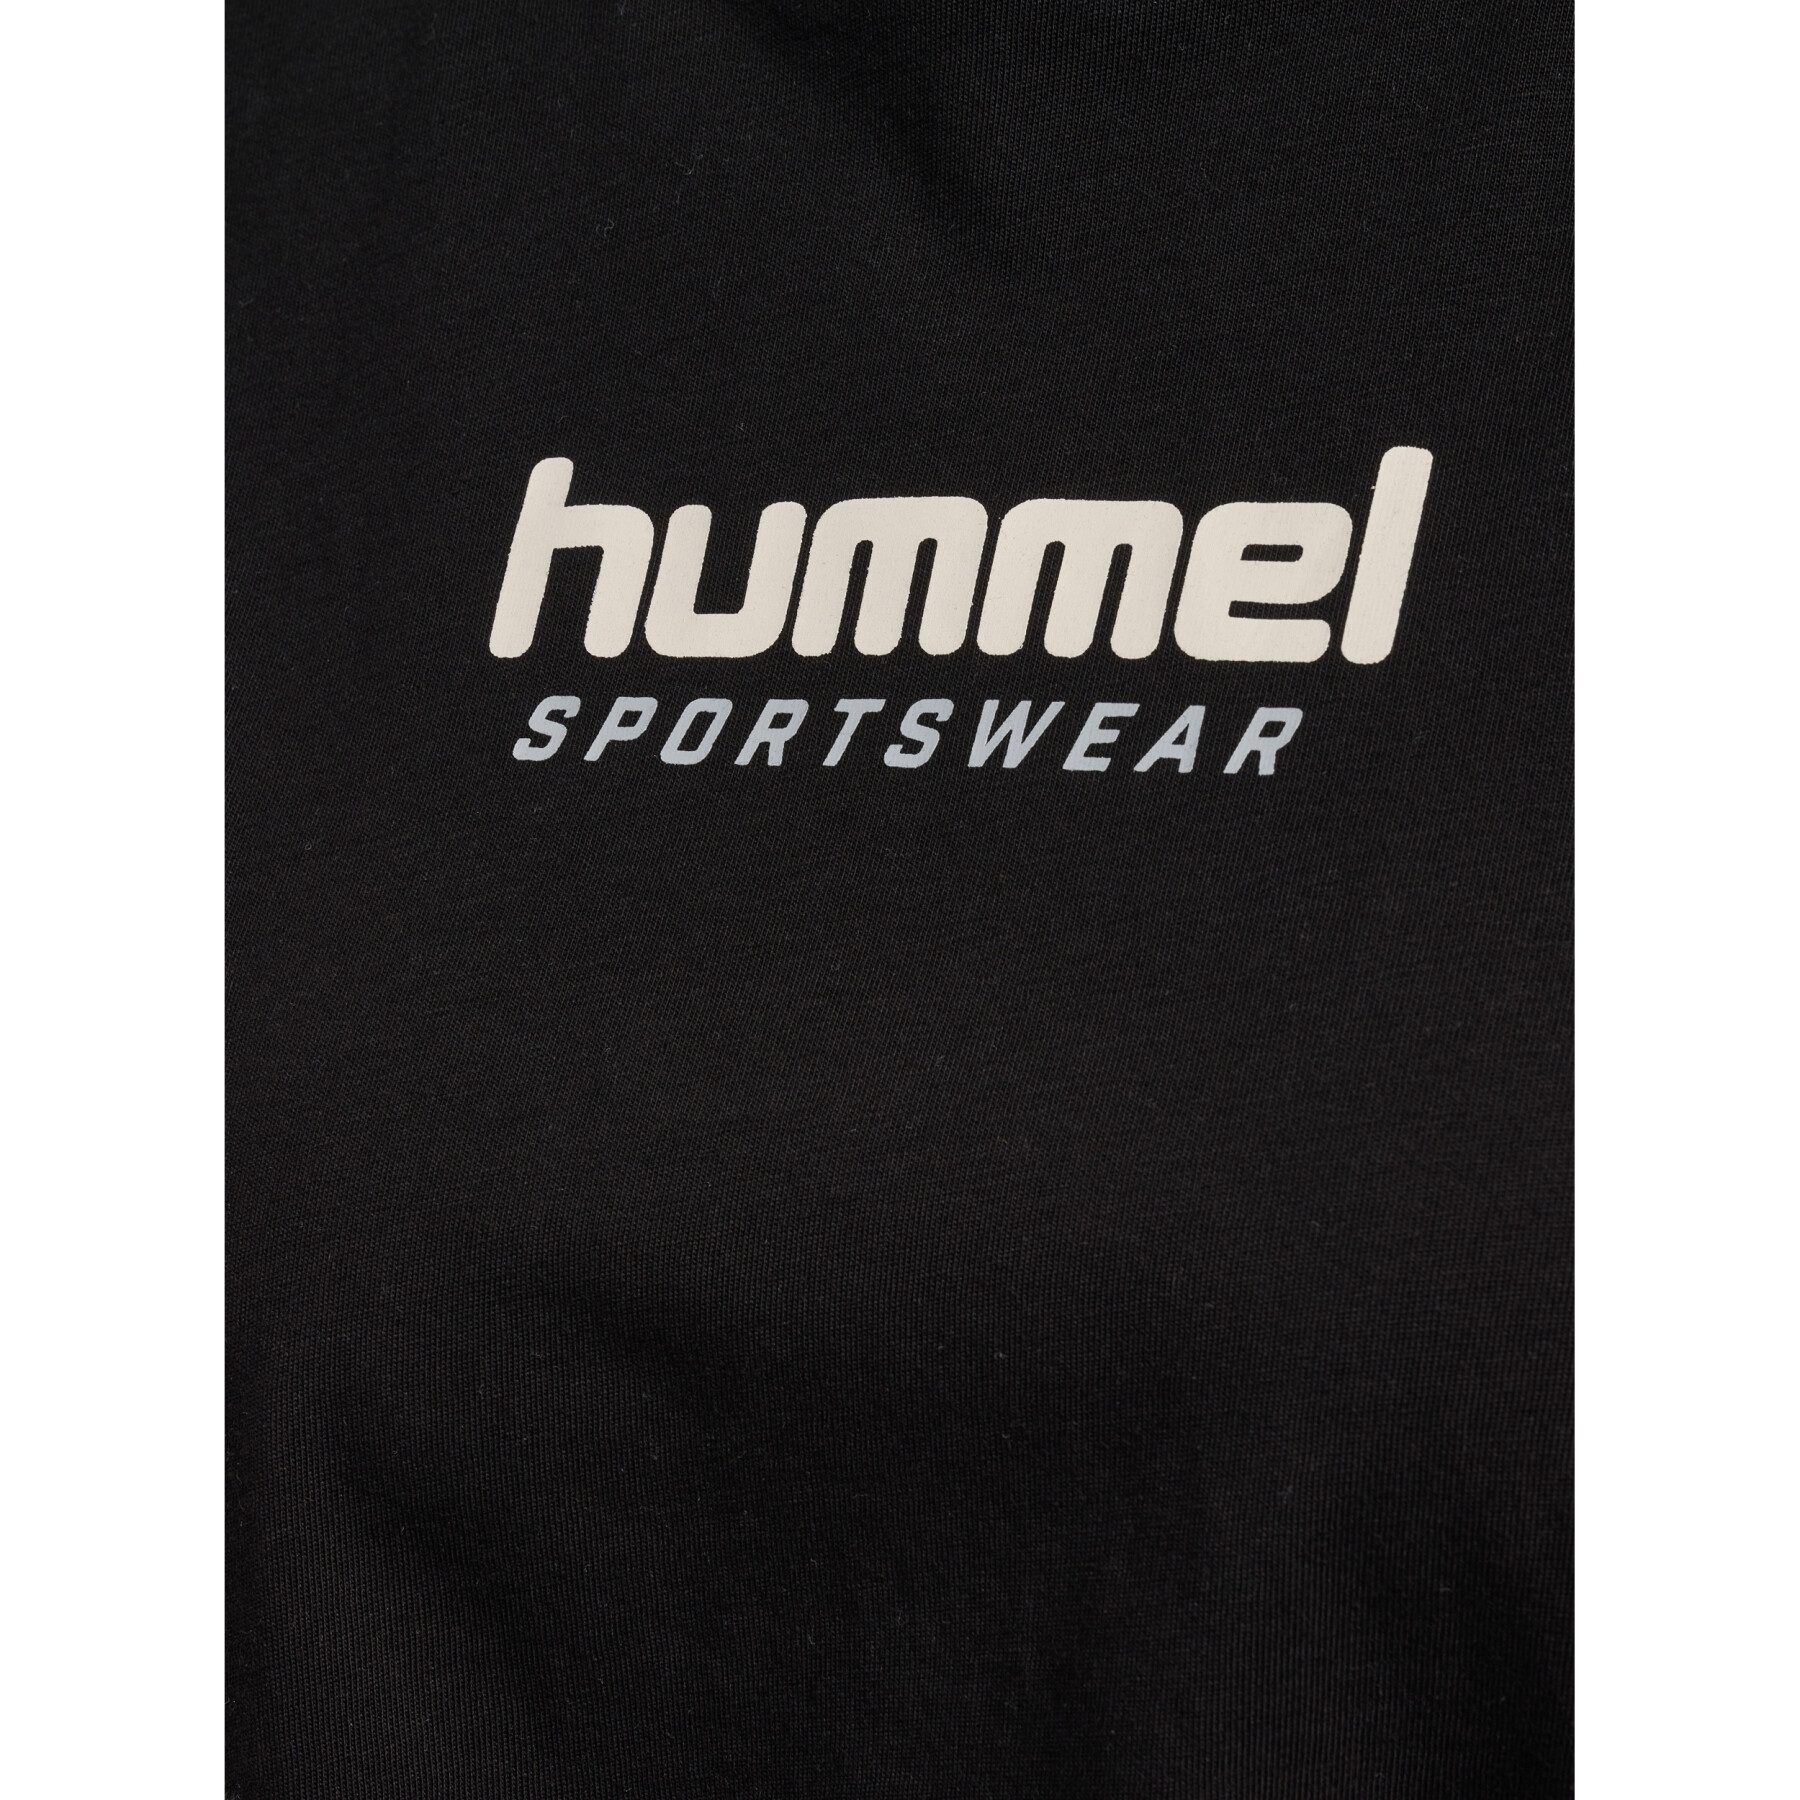 Women's crop T-shirt Hummel LGC Malu